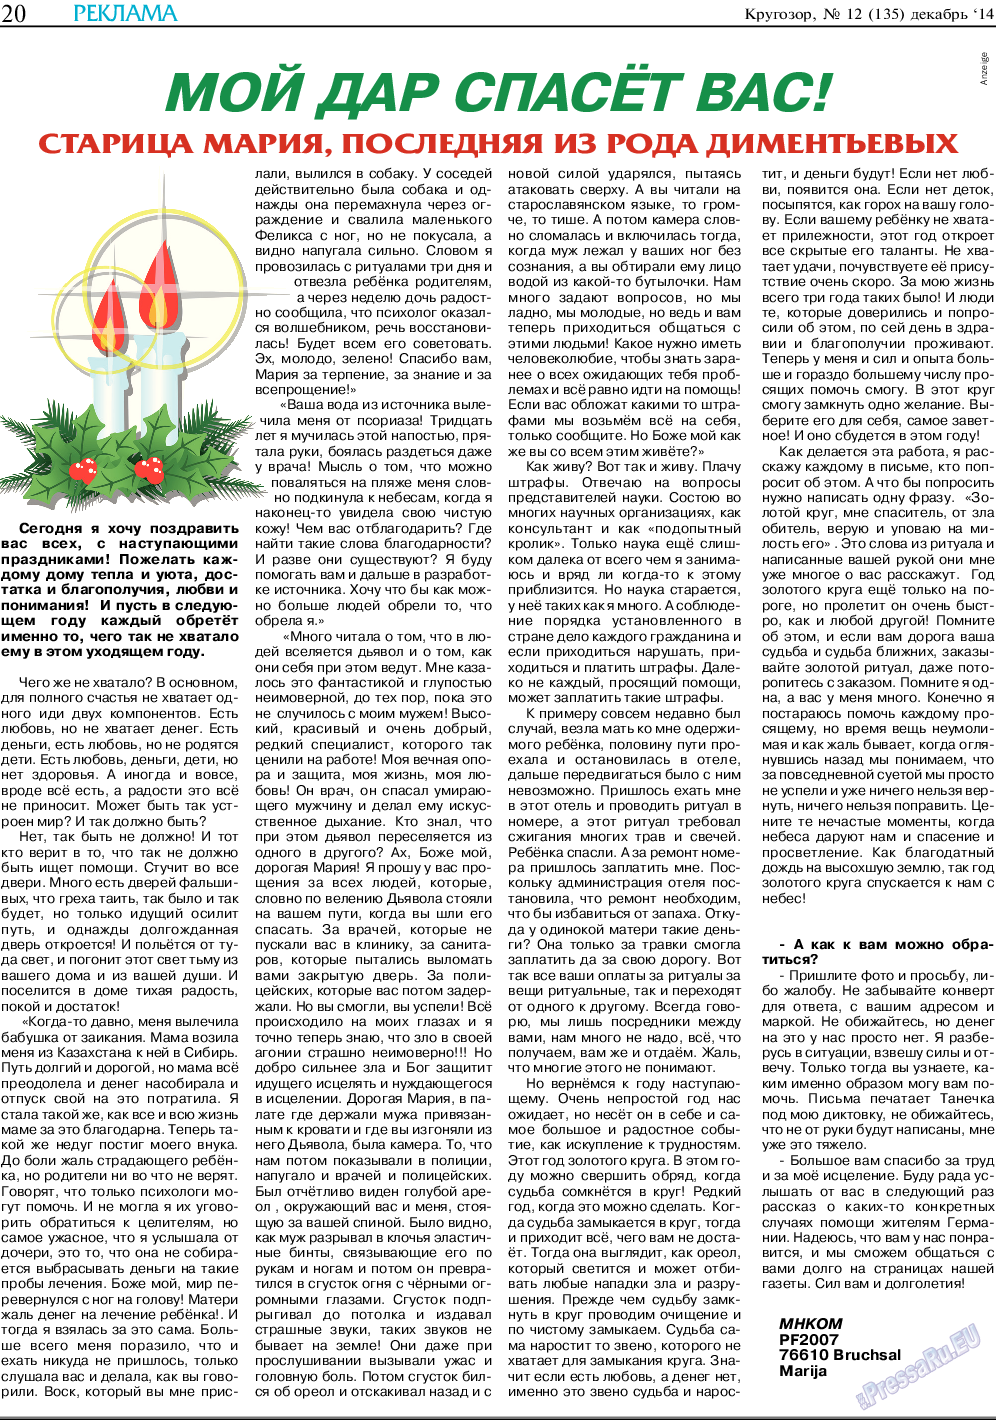 Кругозор, газета. 2014 №12 стр.20